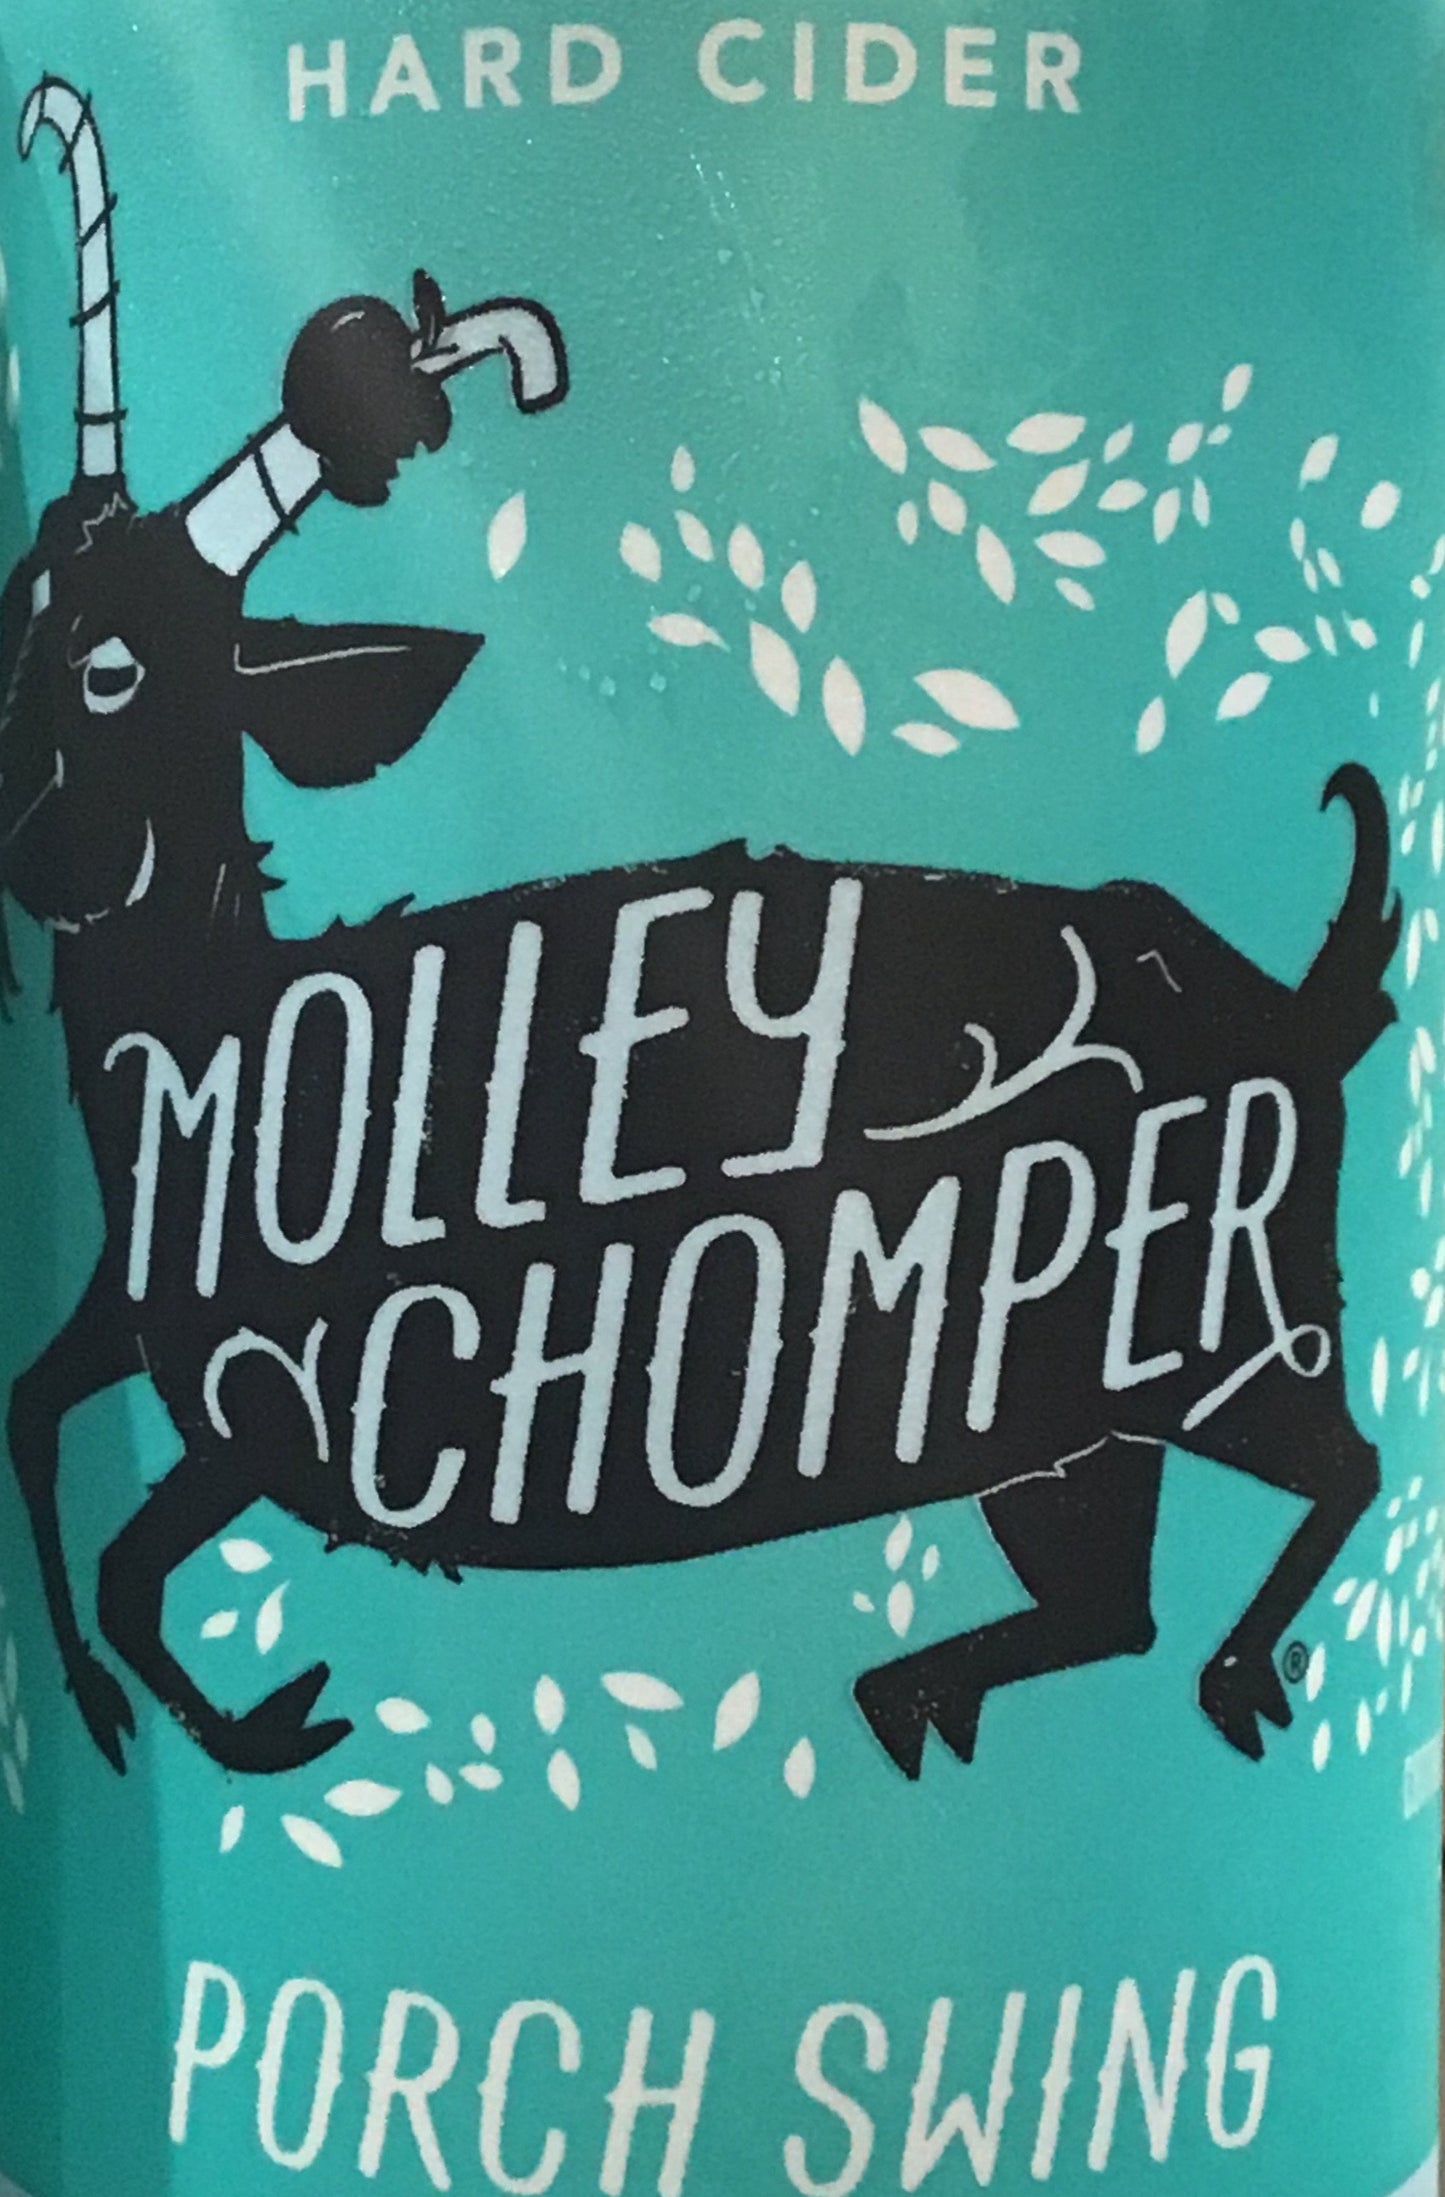 Molley Chomper 'Porch Swing' - 12 oz Can